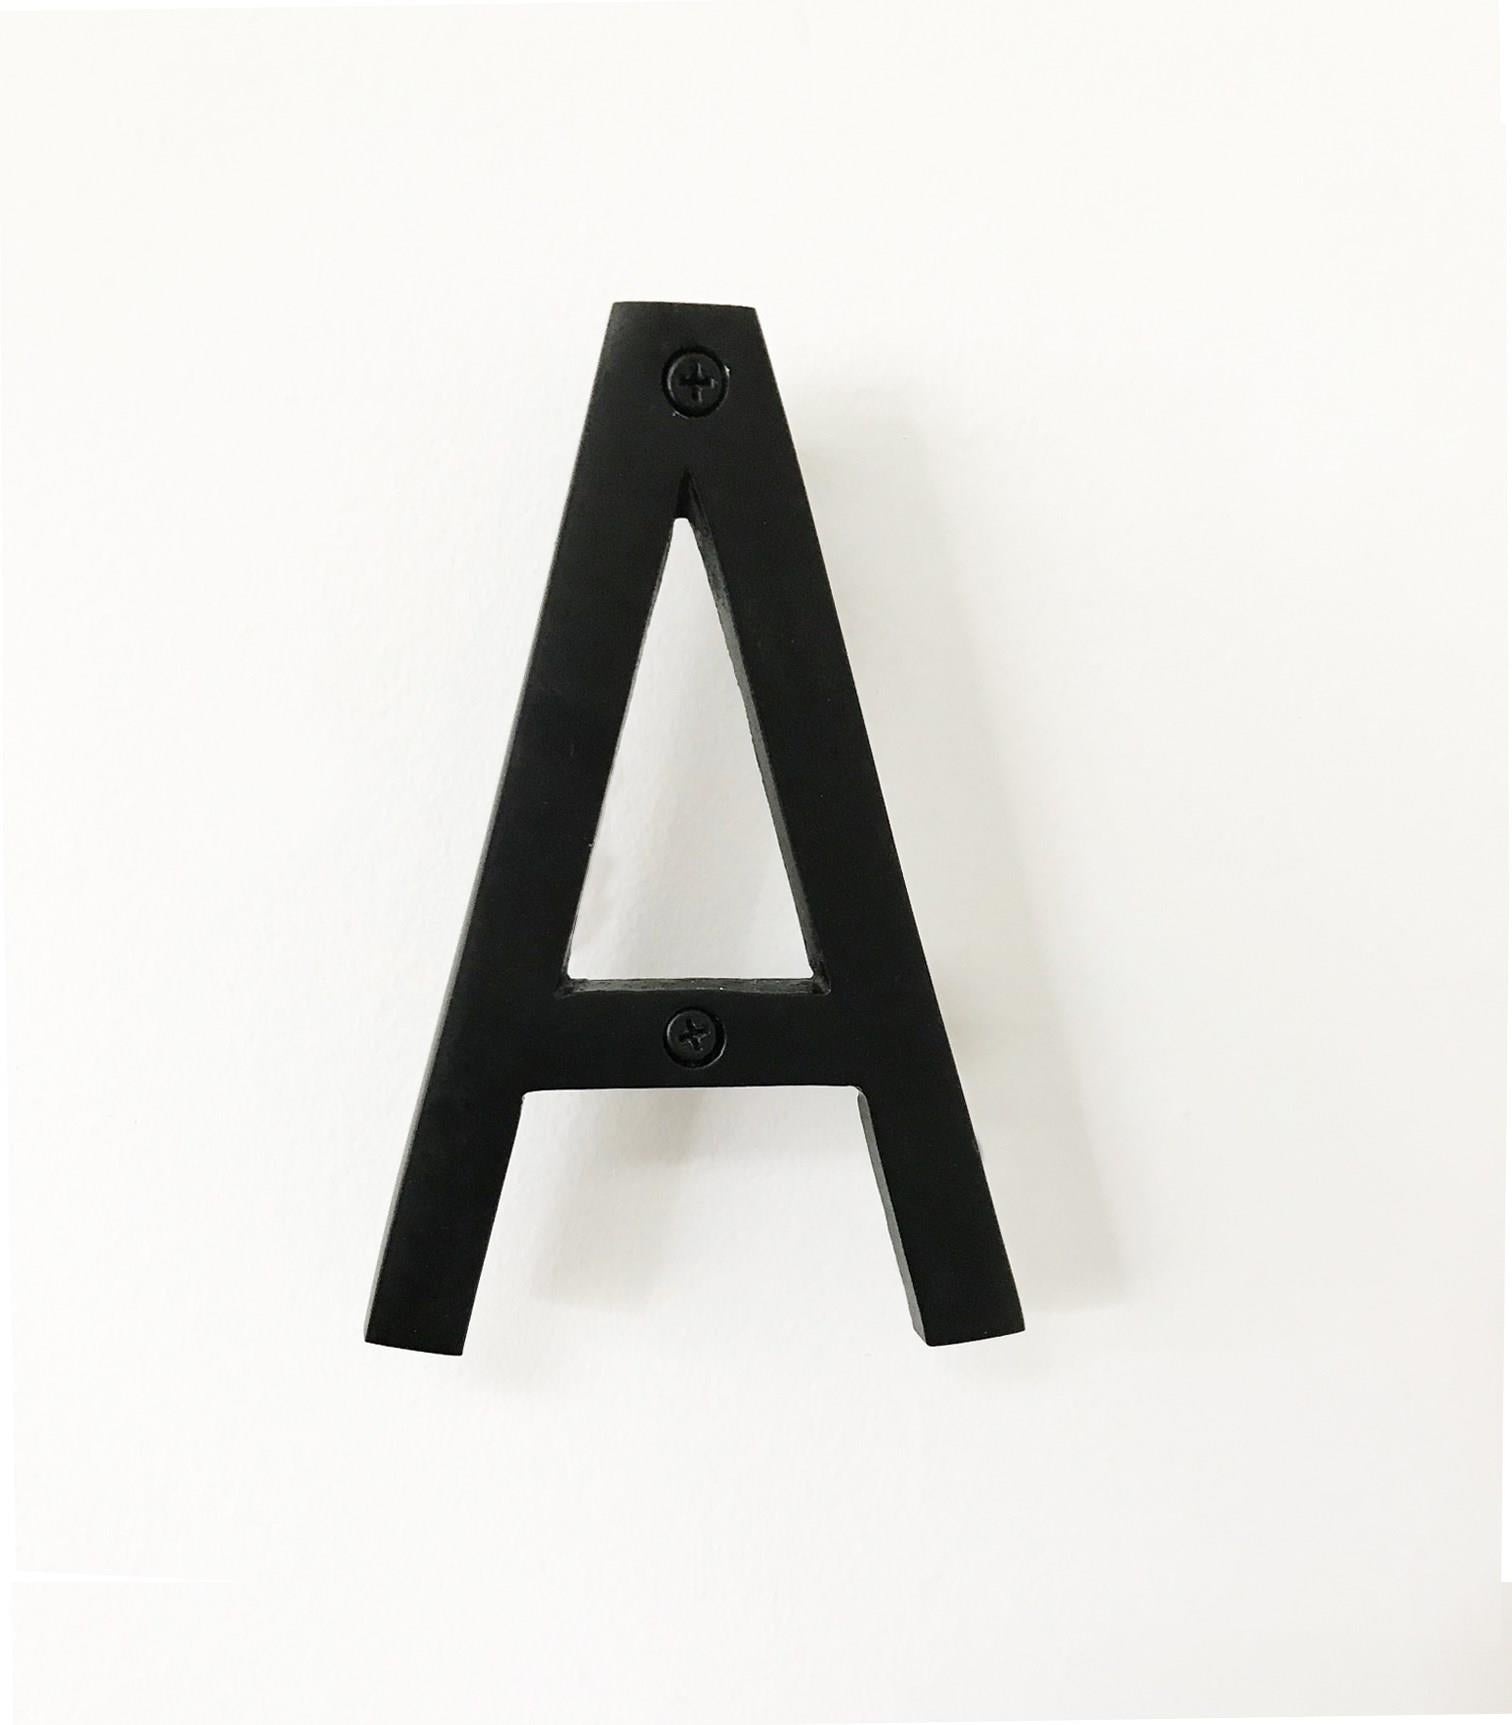 House Letter 'A' - Black Aluminum